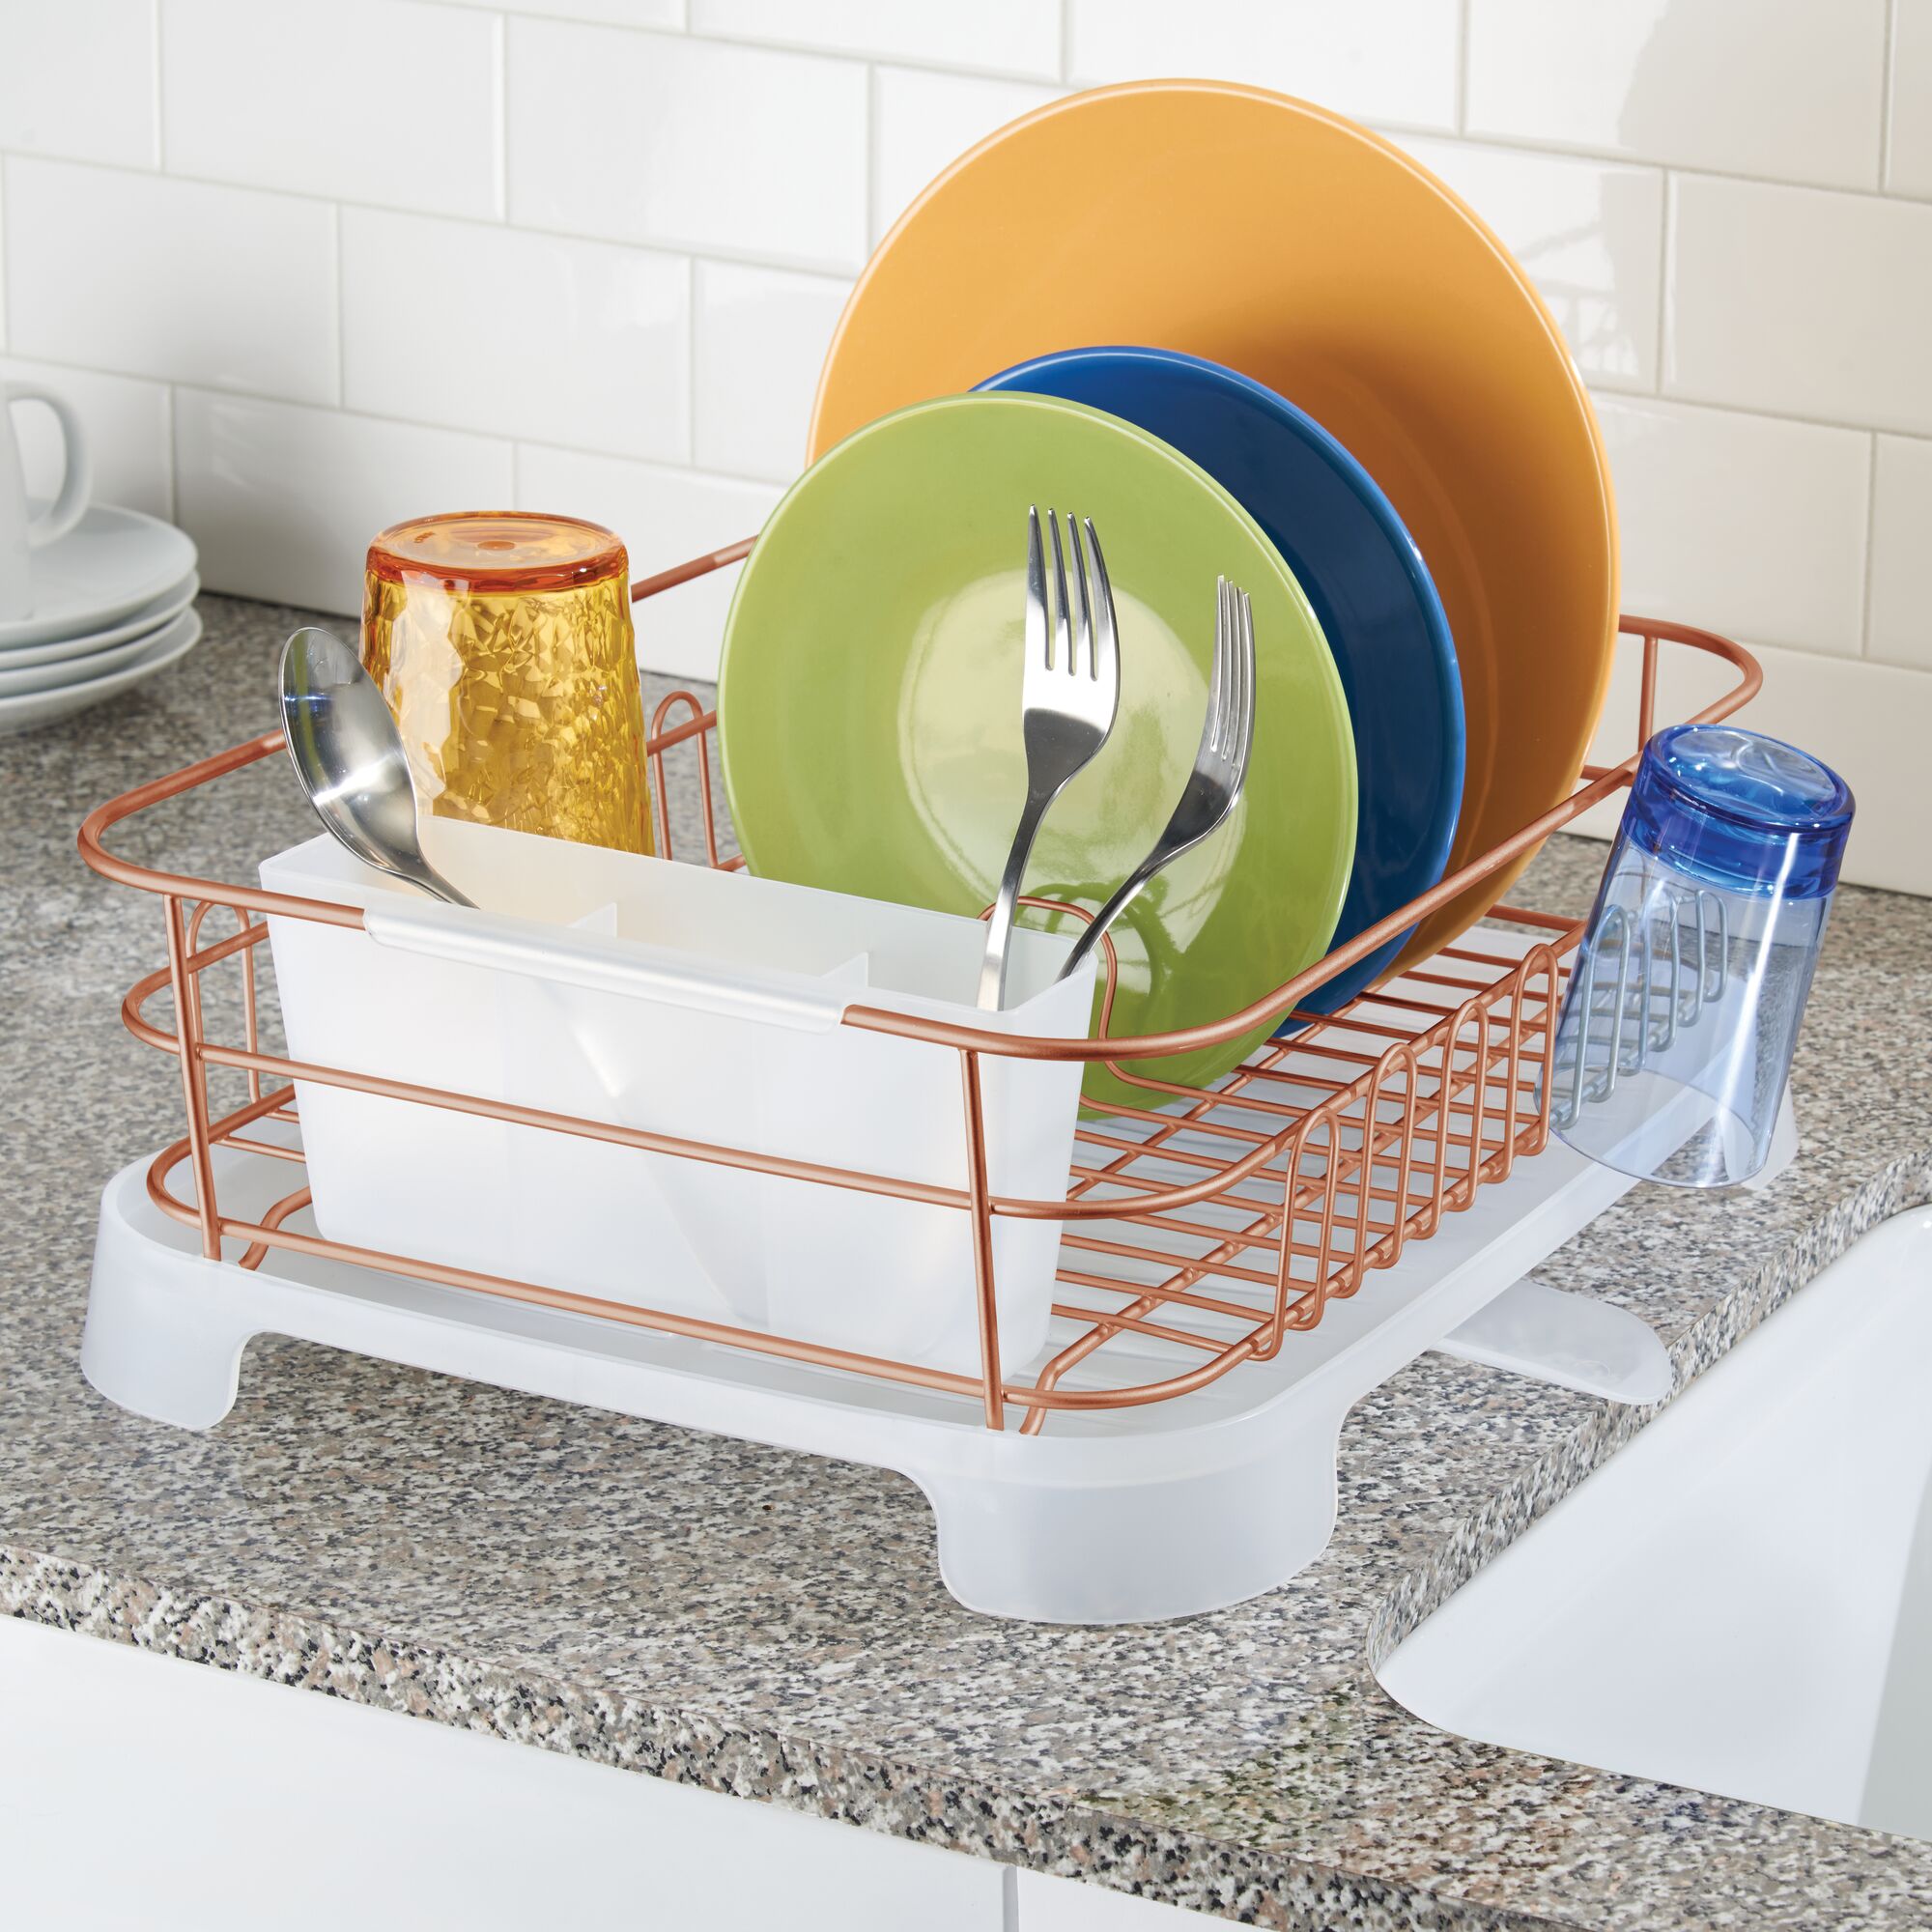 mDesign Modern Metal Kitchen Sink Dish Drying Rack / Mat - 2 Pack